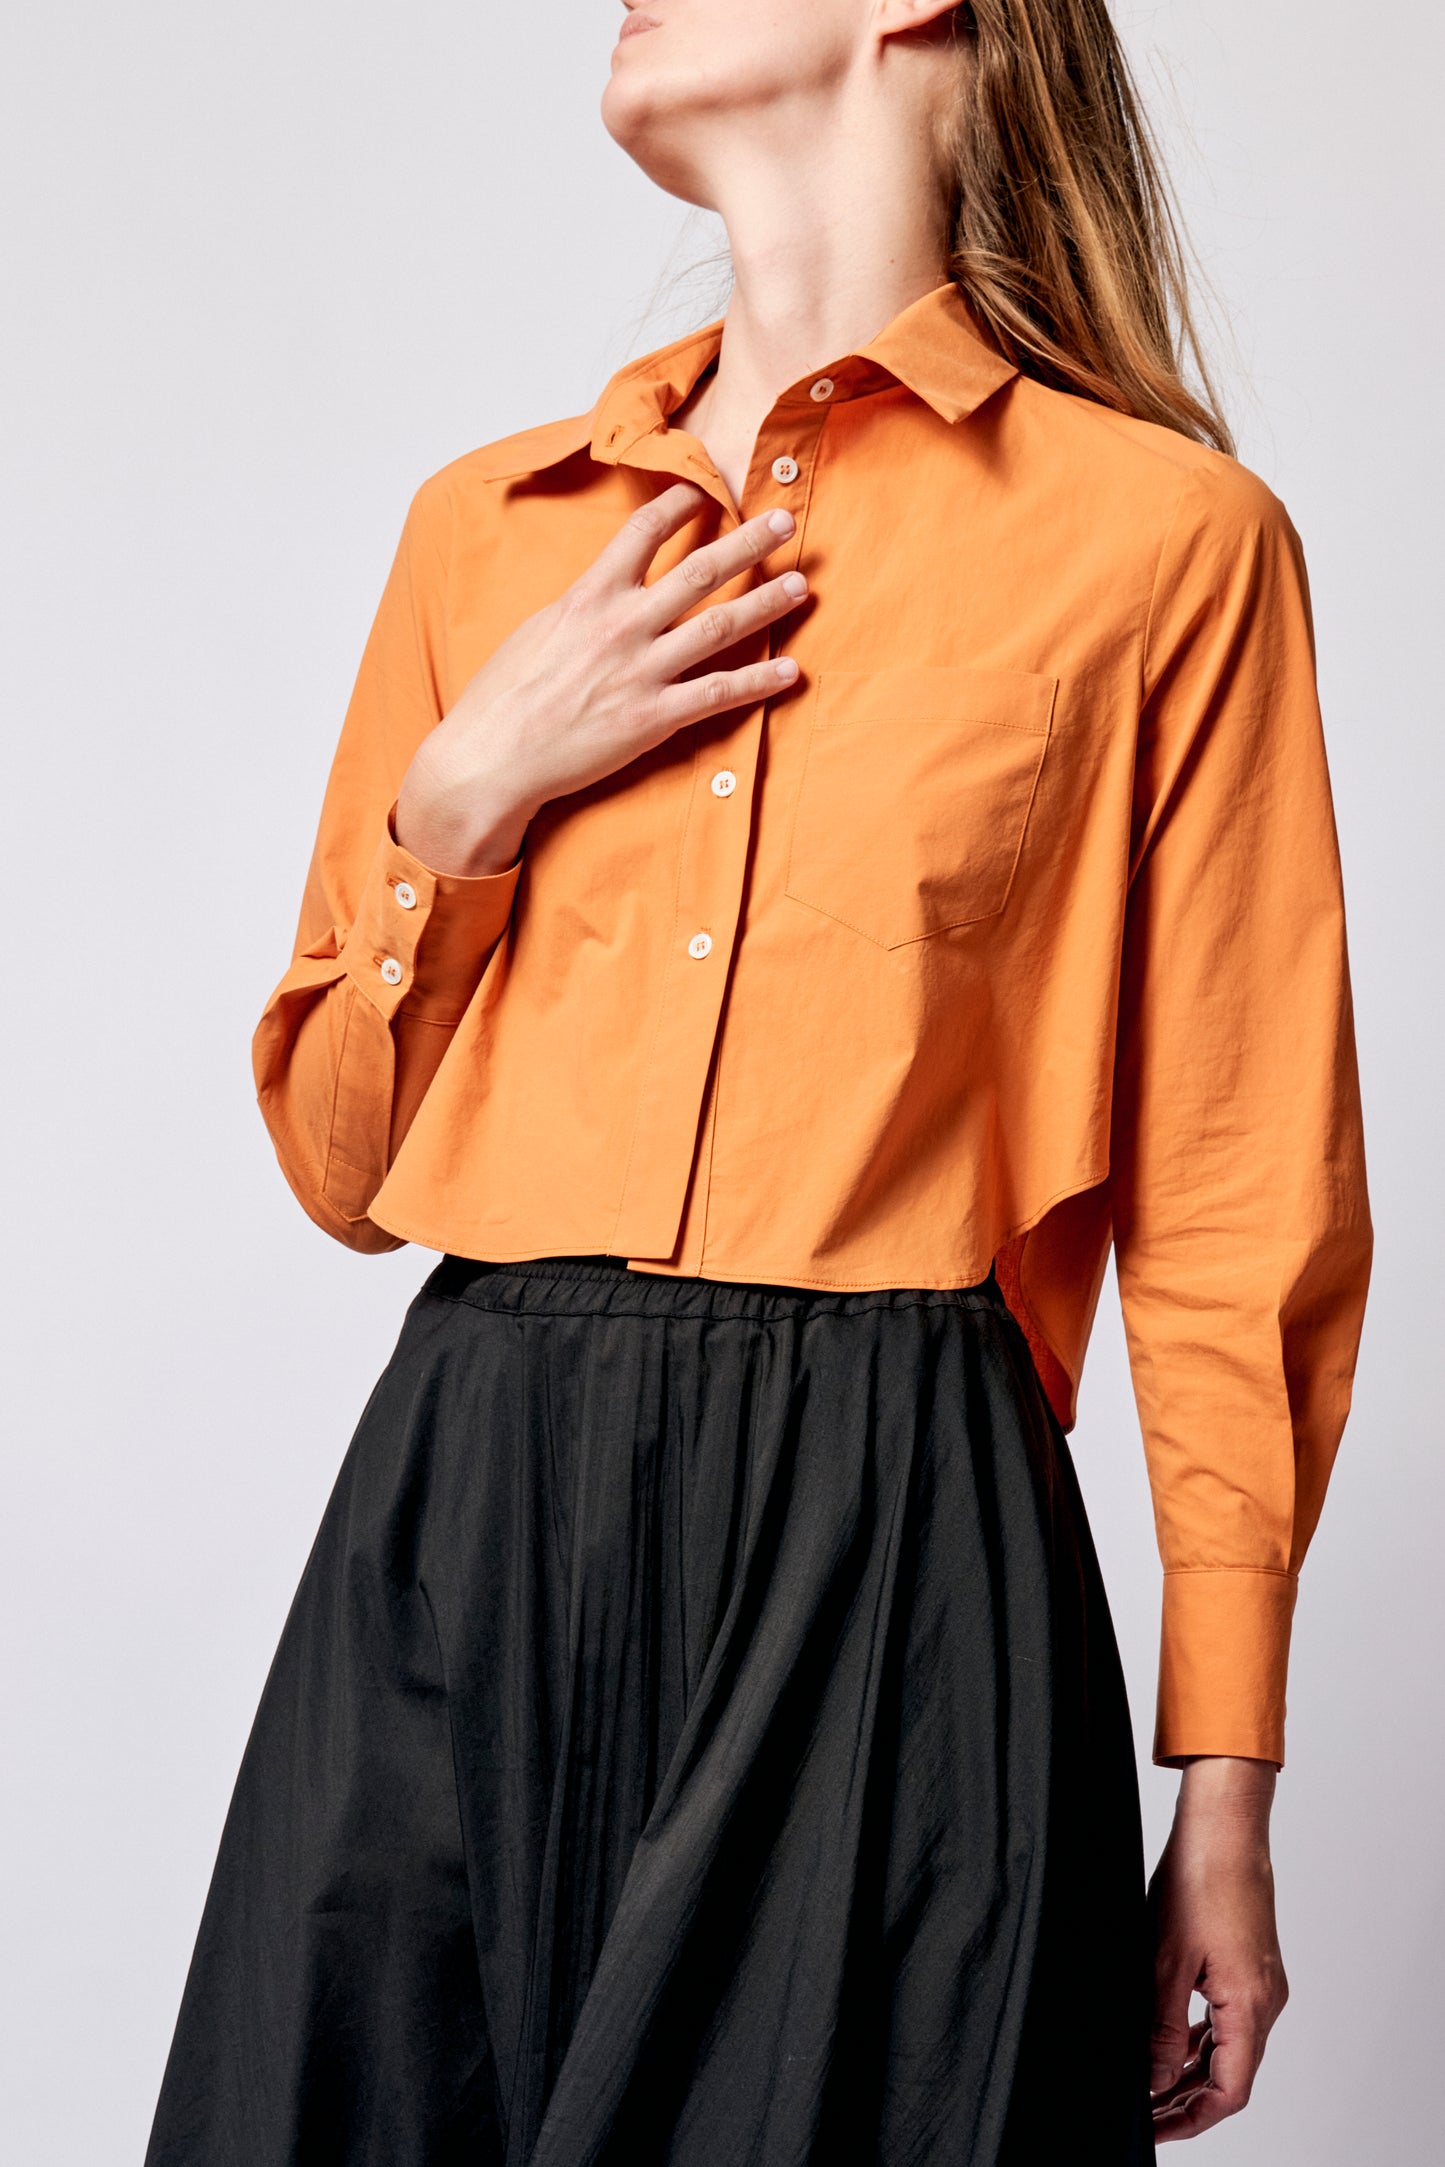 Becky Shirt - Pumpkin